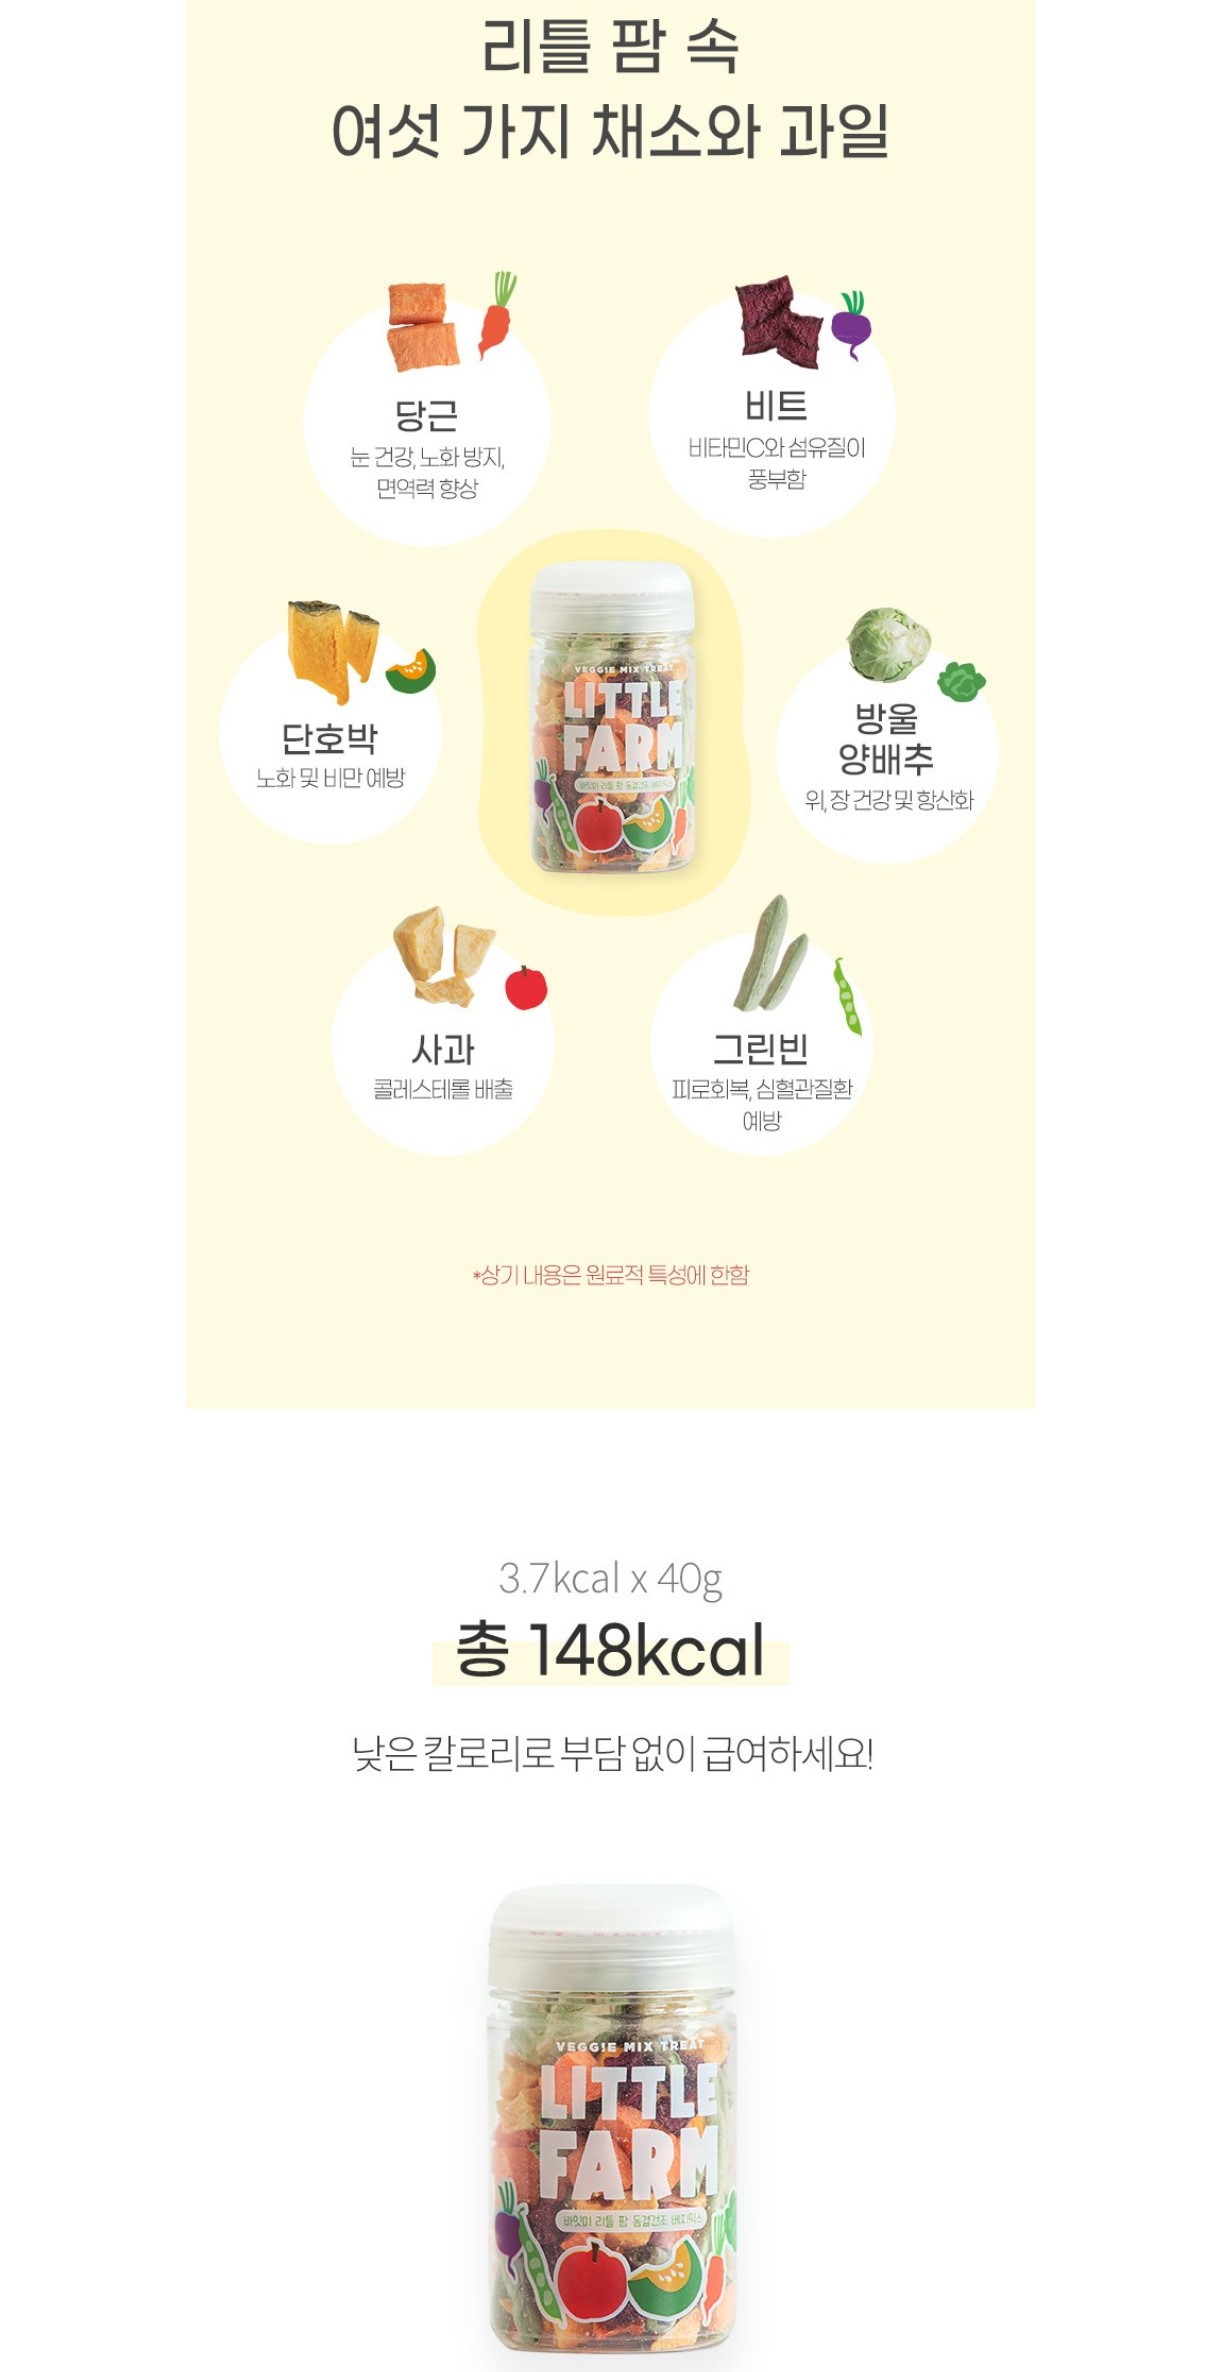 韓國食品-[Biteme] Little Farm Veggie Mix Treat 40g